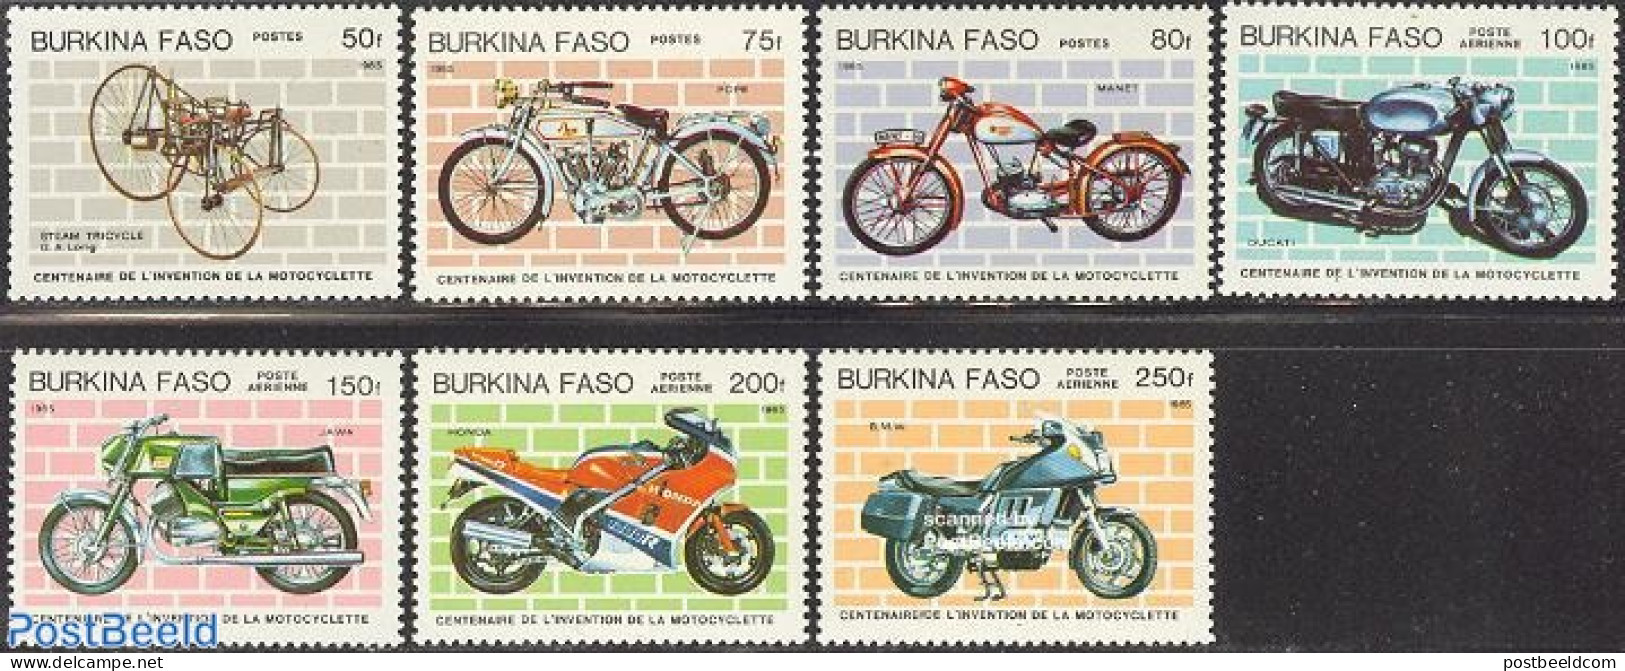 Burkina Faso 1985 Motorcycle Centenary 7v, Mint NH, Transport - Motorcycles - Motorbikes